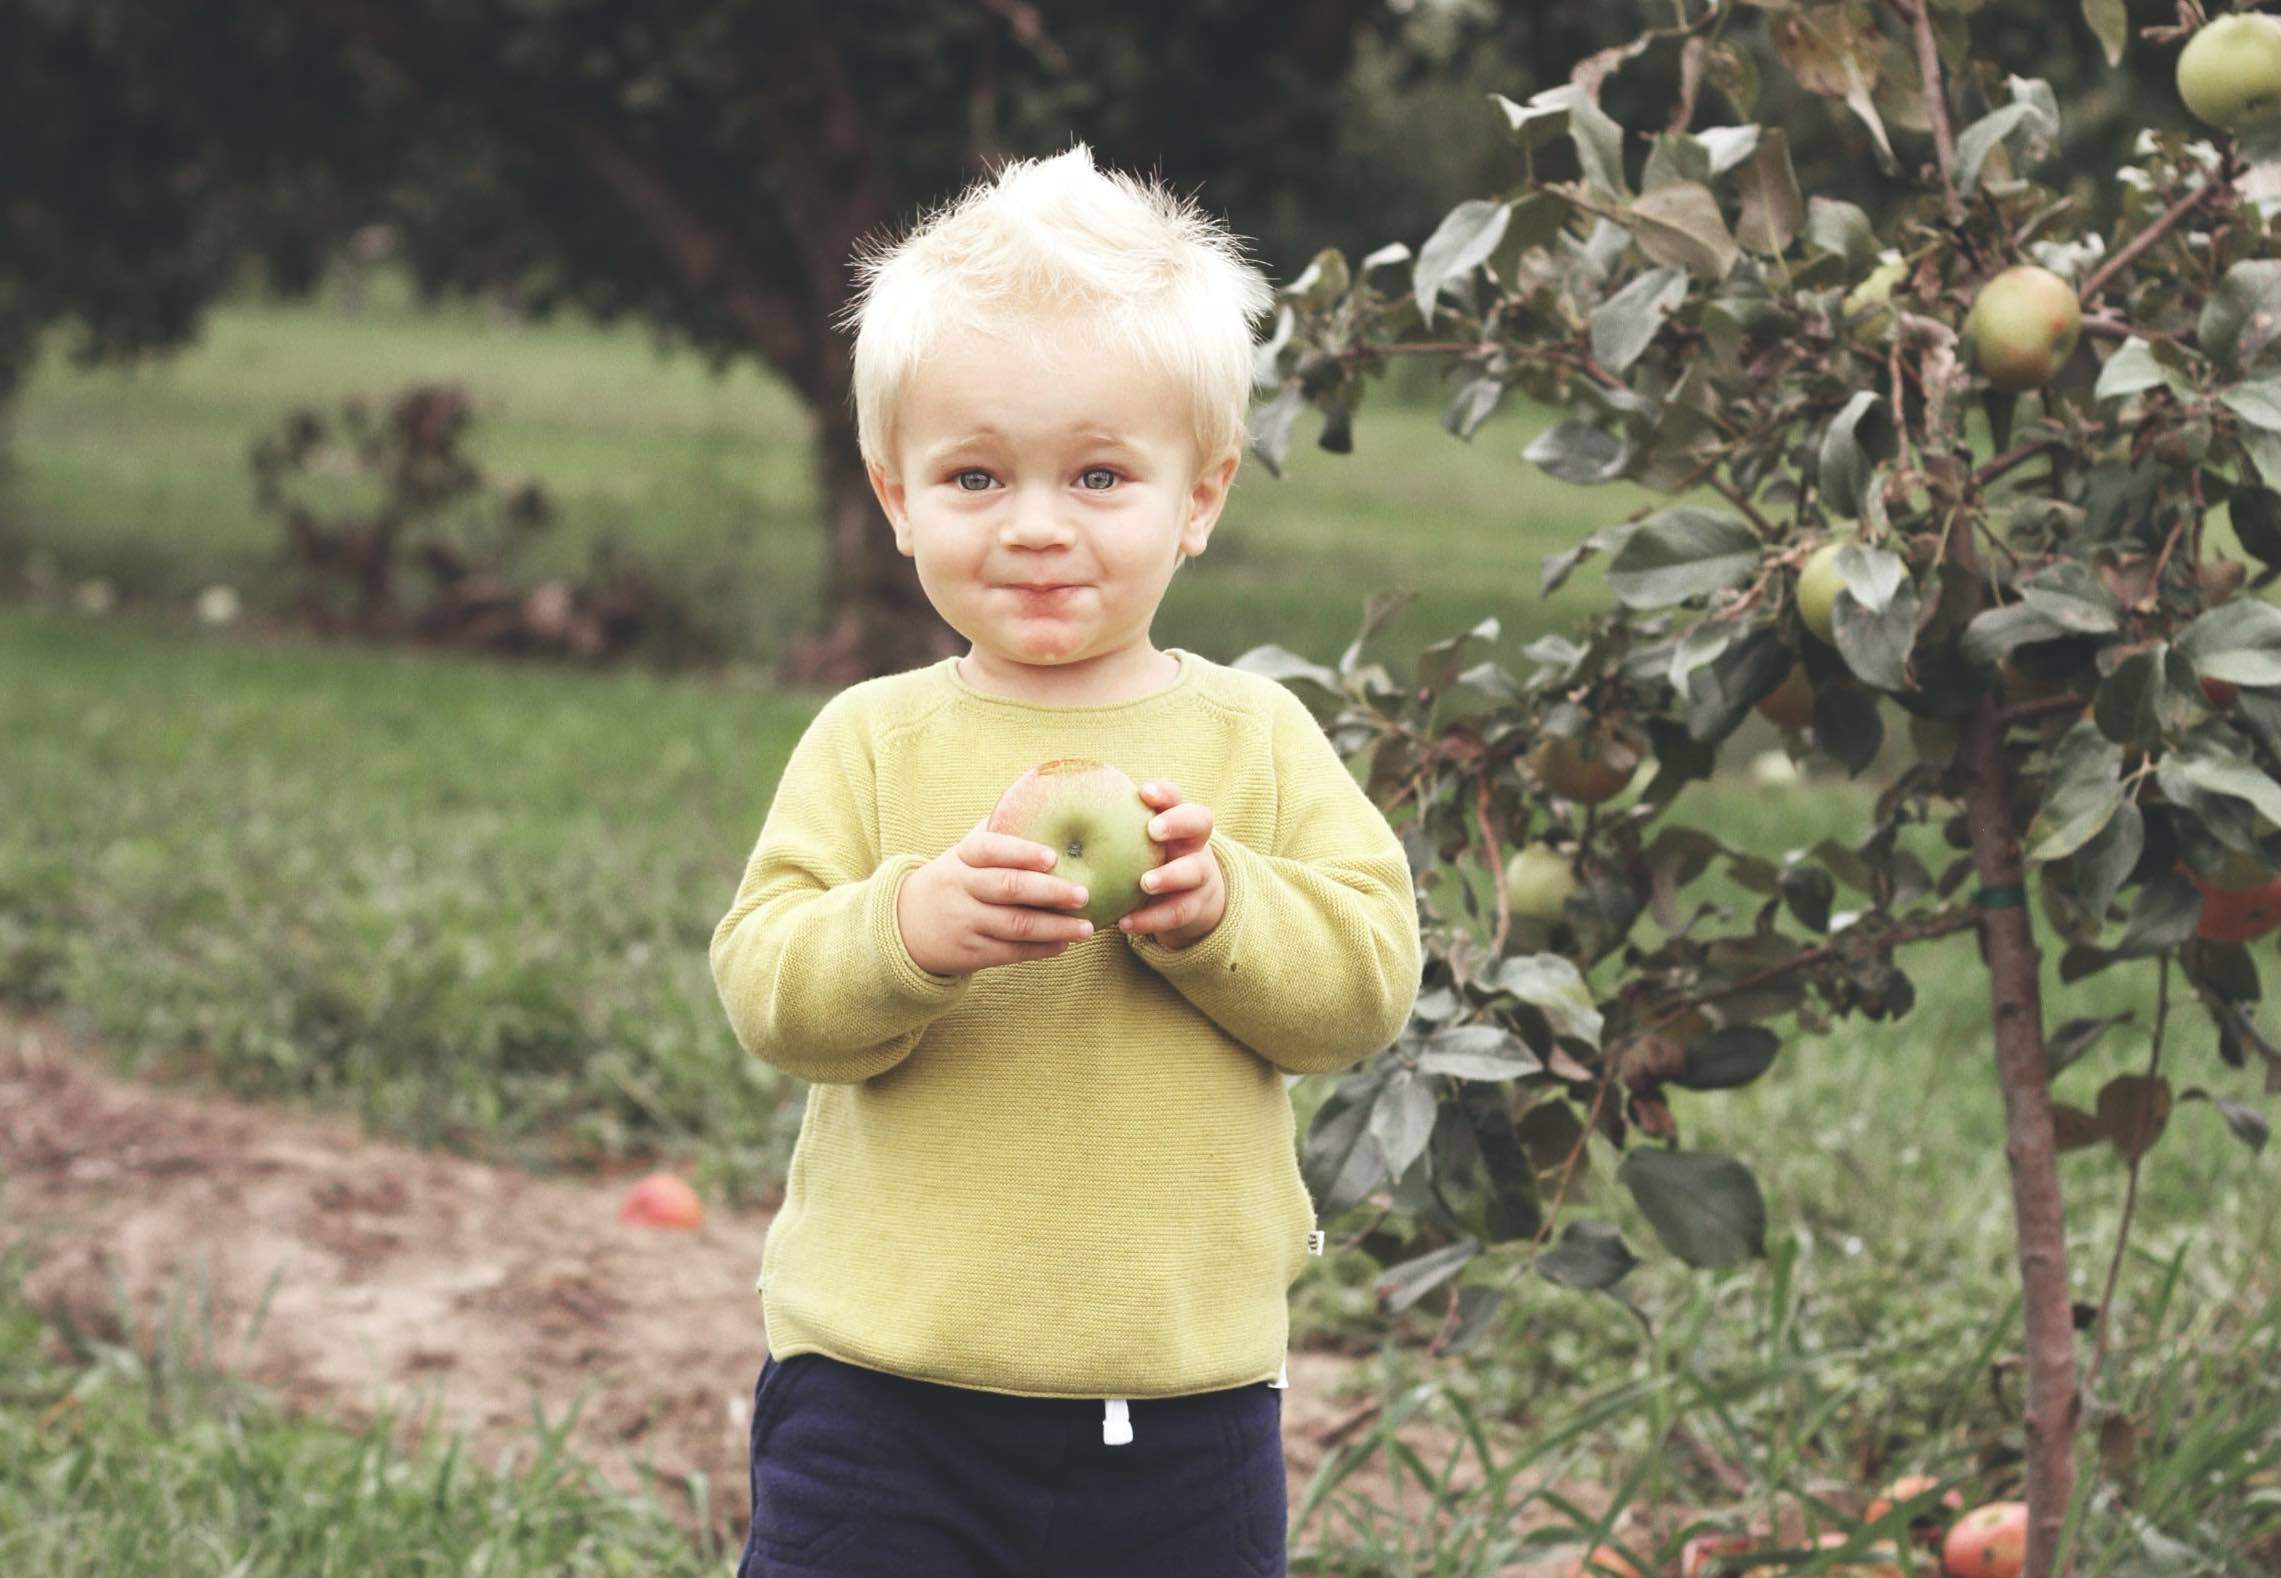 W konkursie Bardzo Młody Rolnik wygrają autorzy zdjęć, które najlepiej pokażą radość dziecka z życia w gospodarstwie